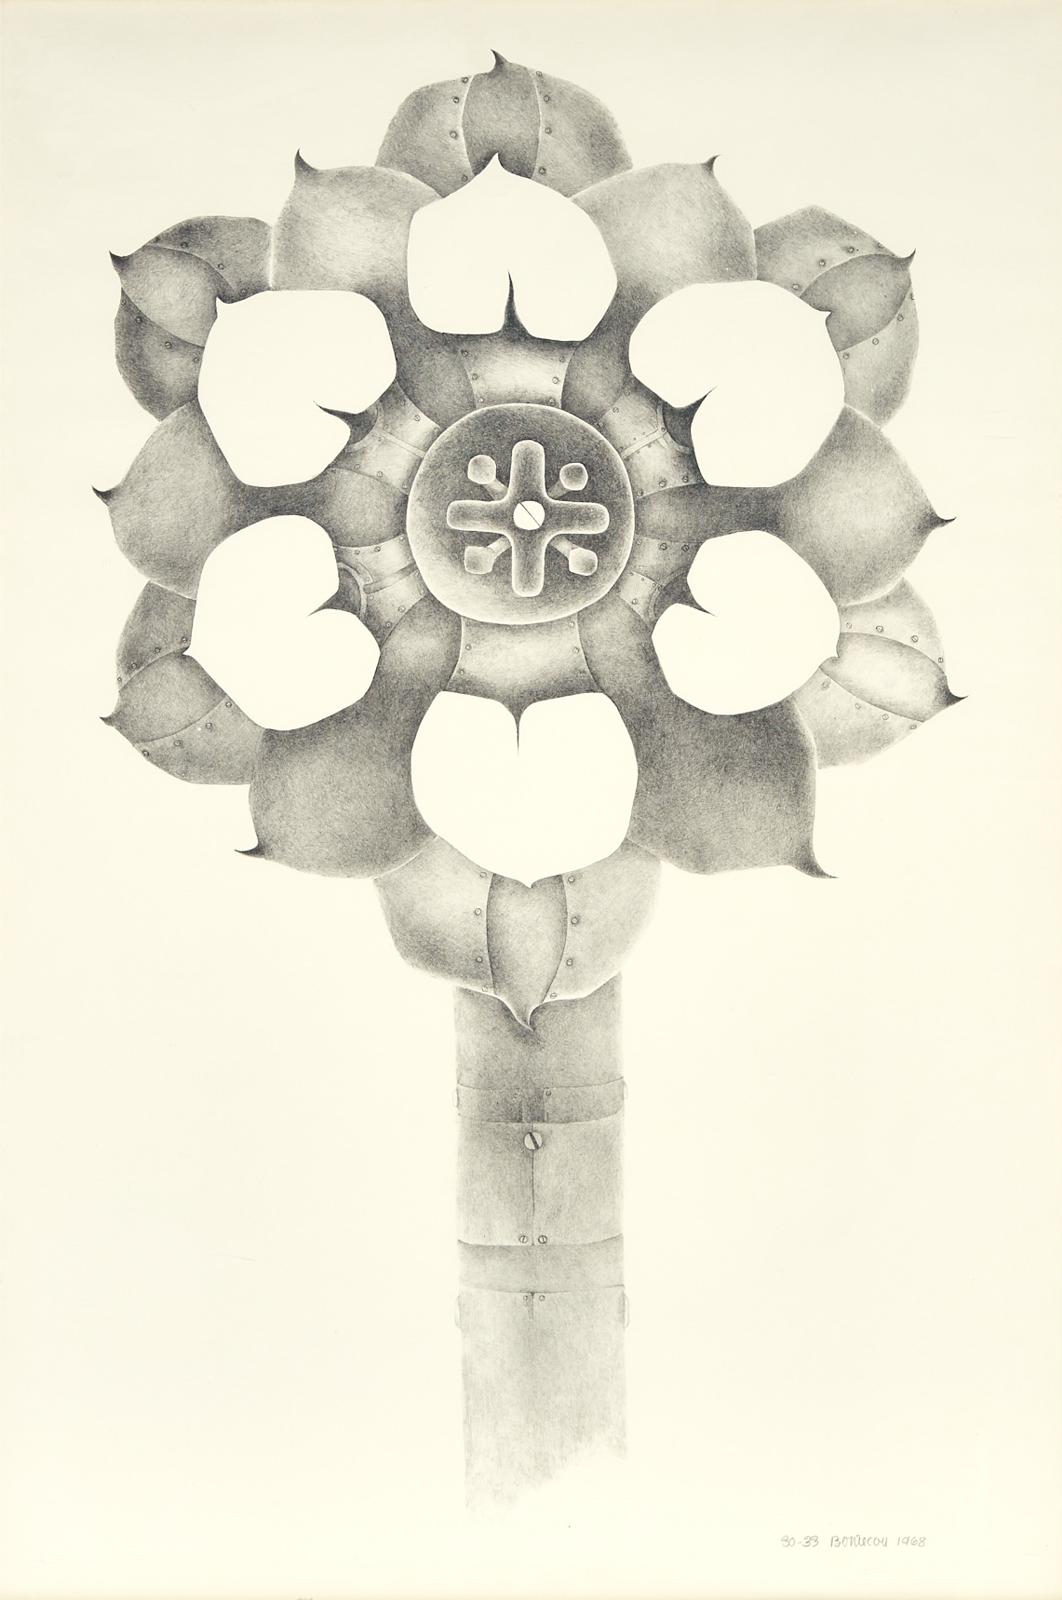 Lee Bontecou (1931) - Tenth Stone, 1968 [field, 14]